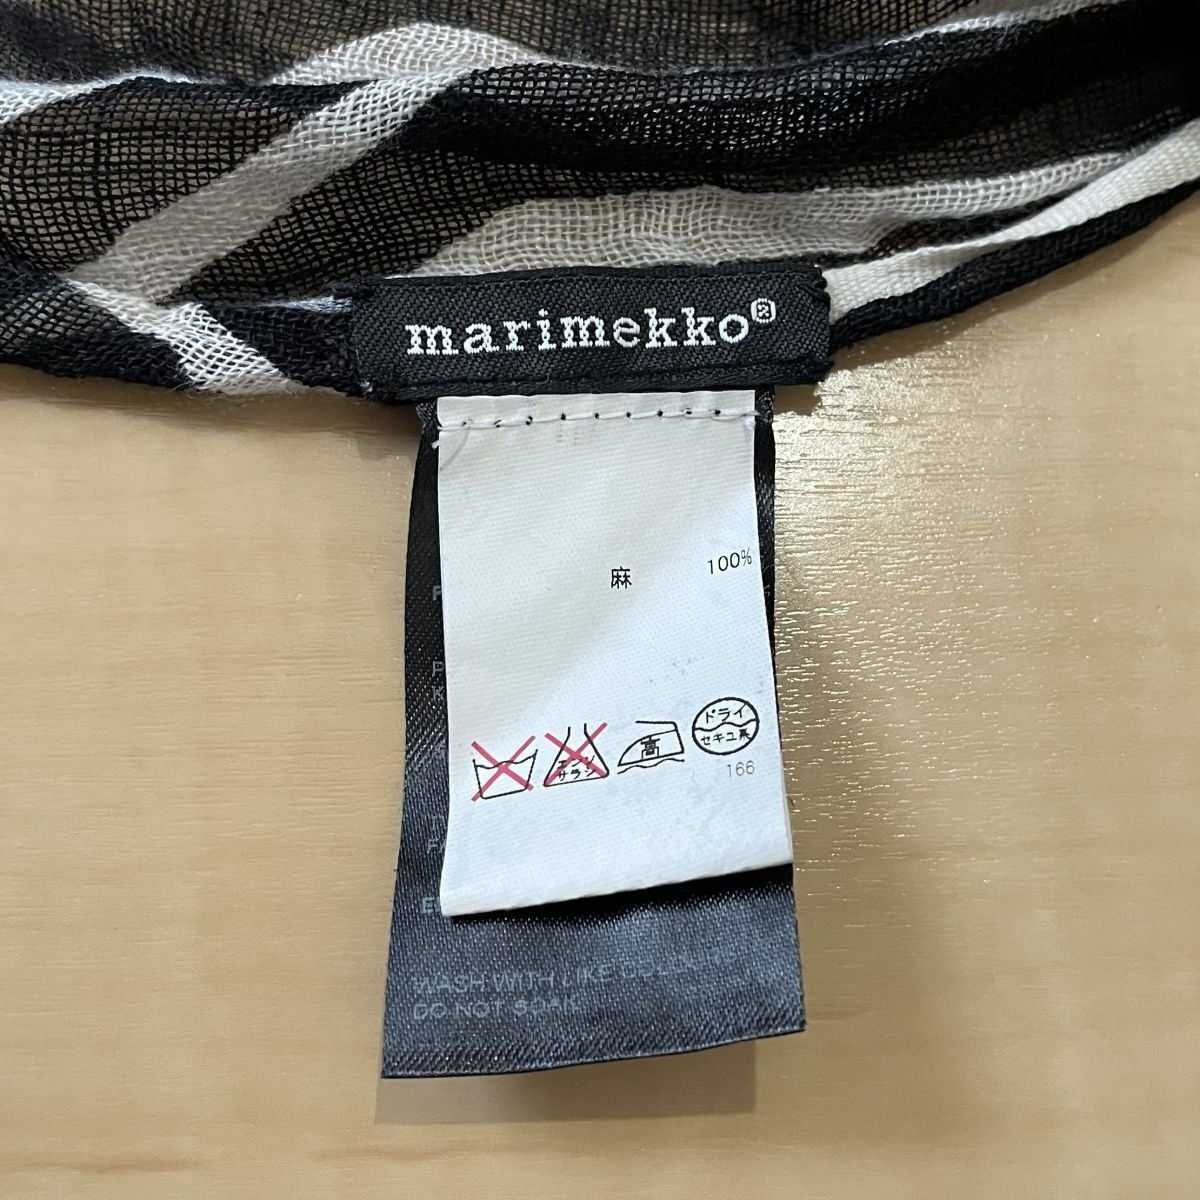  прекрасный товар marimekko Marimekko окантовка рисунок linen100% бахрома длинный muffler палантин шаль черный × белый *